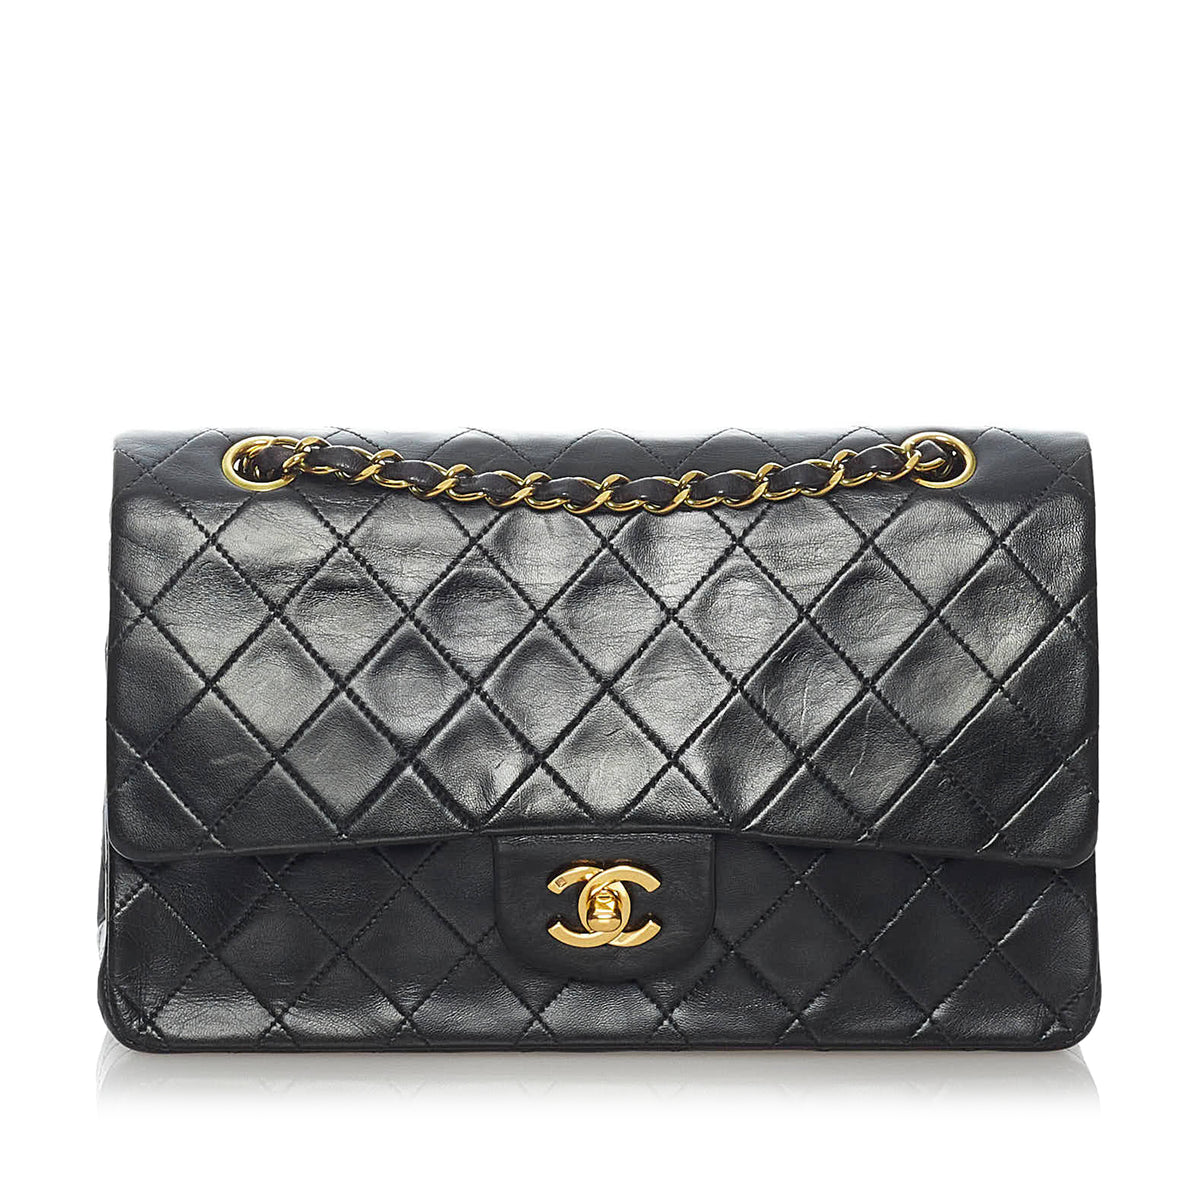 Chanel Double Mini Flap bag - Touched Vintage